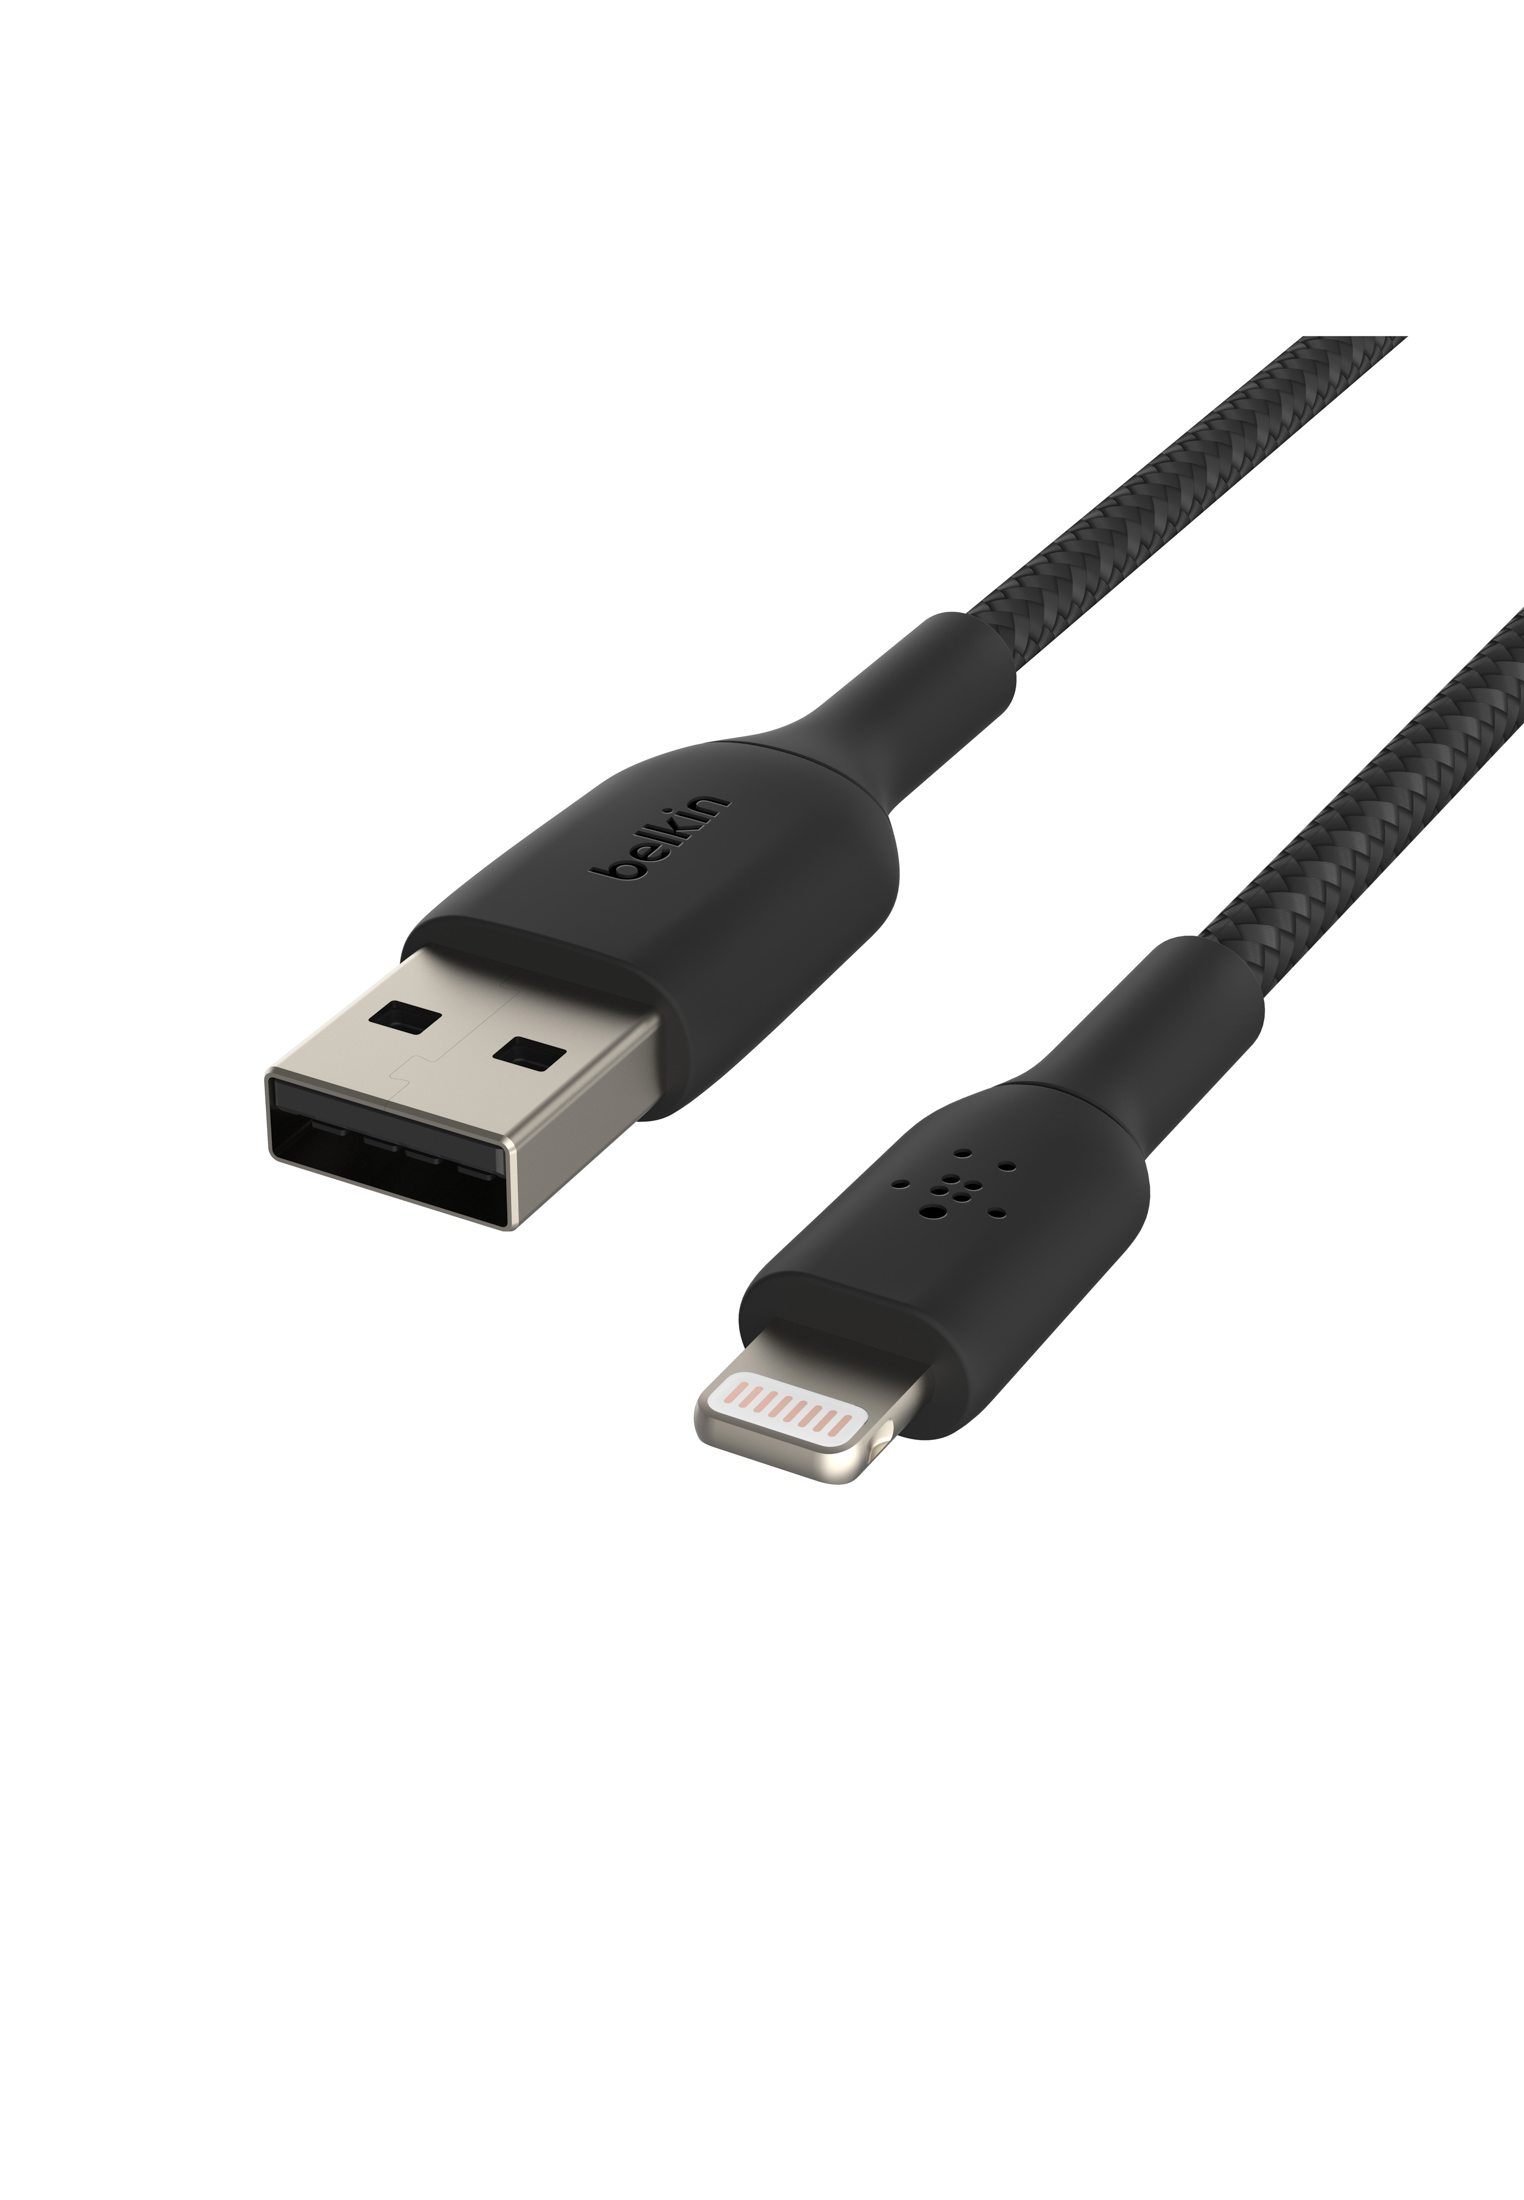 BELKIN BOOST schwarz CHARGE™, Lightningkabel USB-A, 2 m